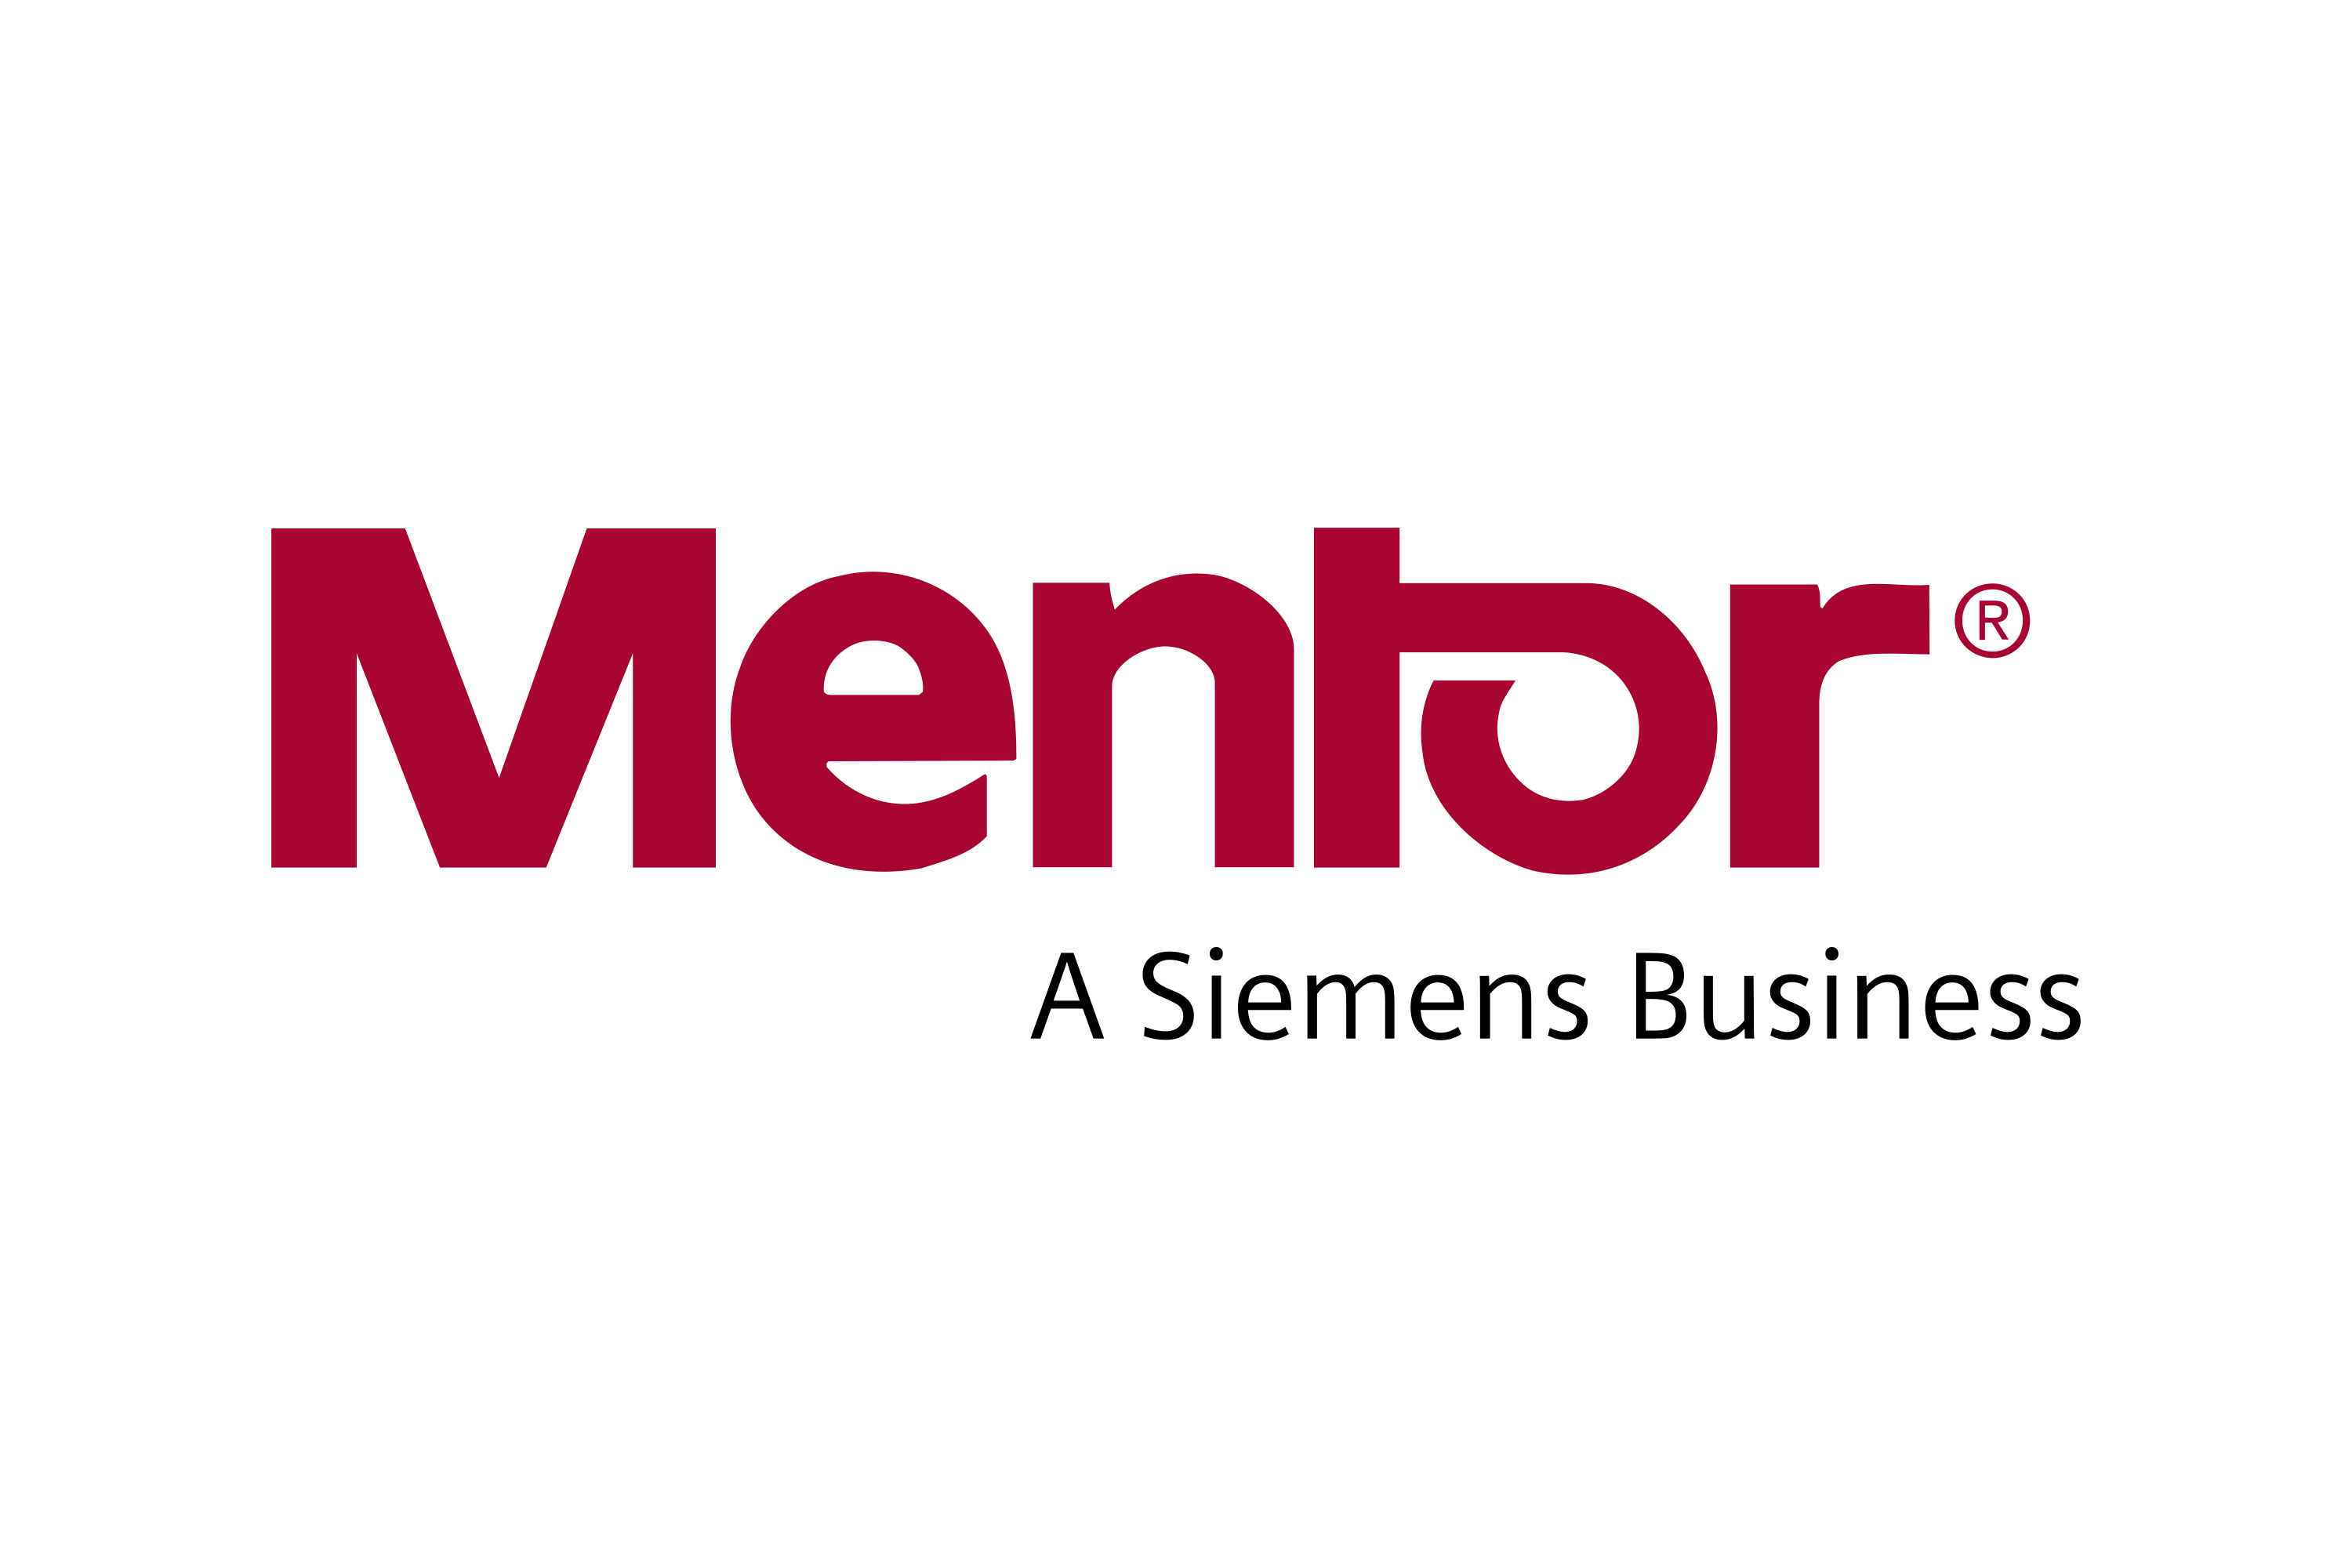 Download Mentor Logo in SVG Vector or File Format Logo.wine